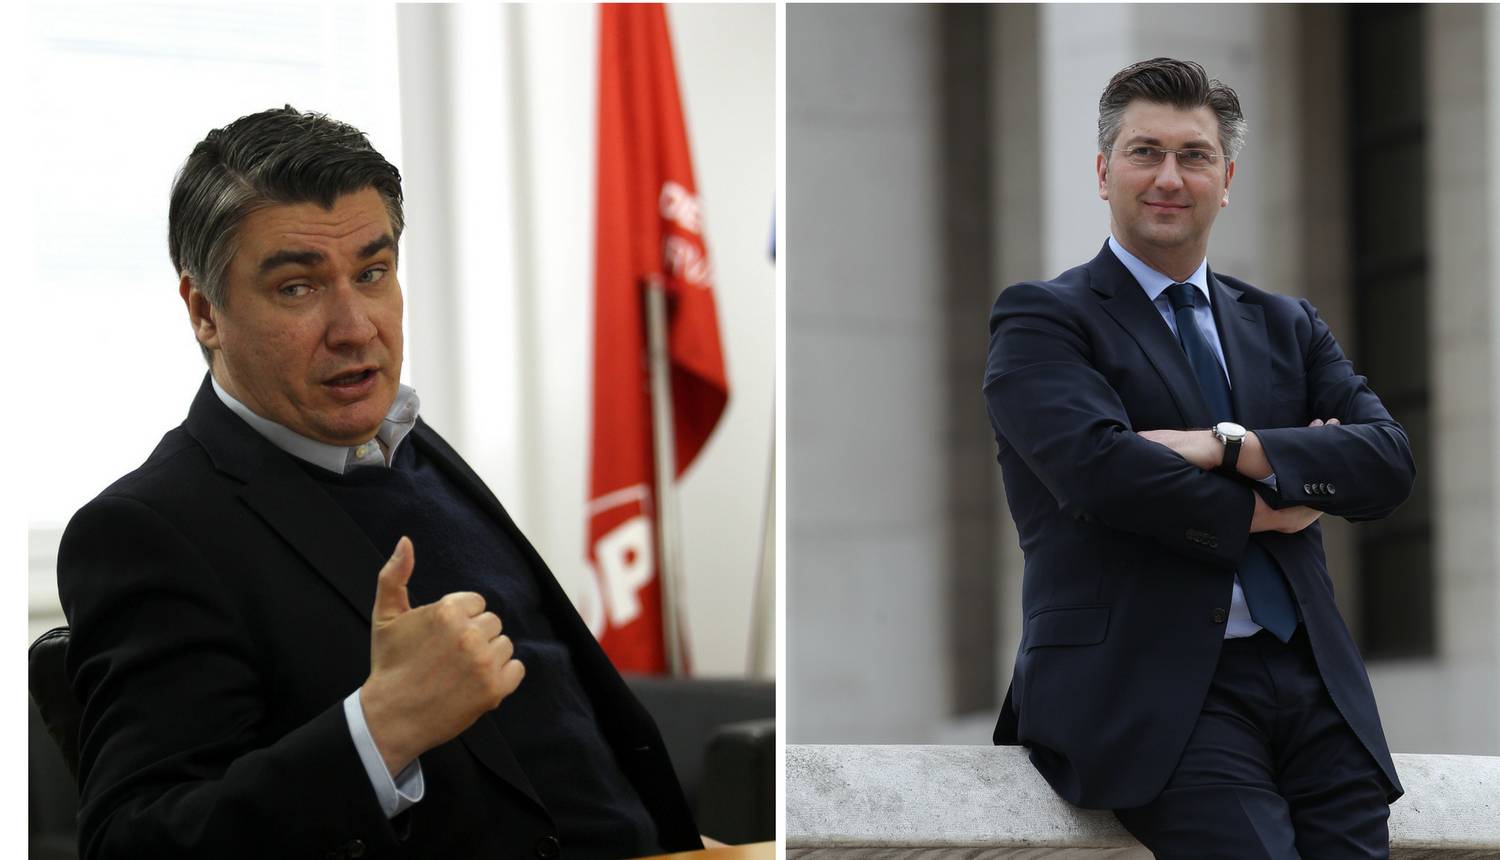 Debata između Plenkovića i Milanovića u petak u 20 sati